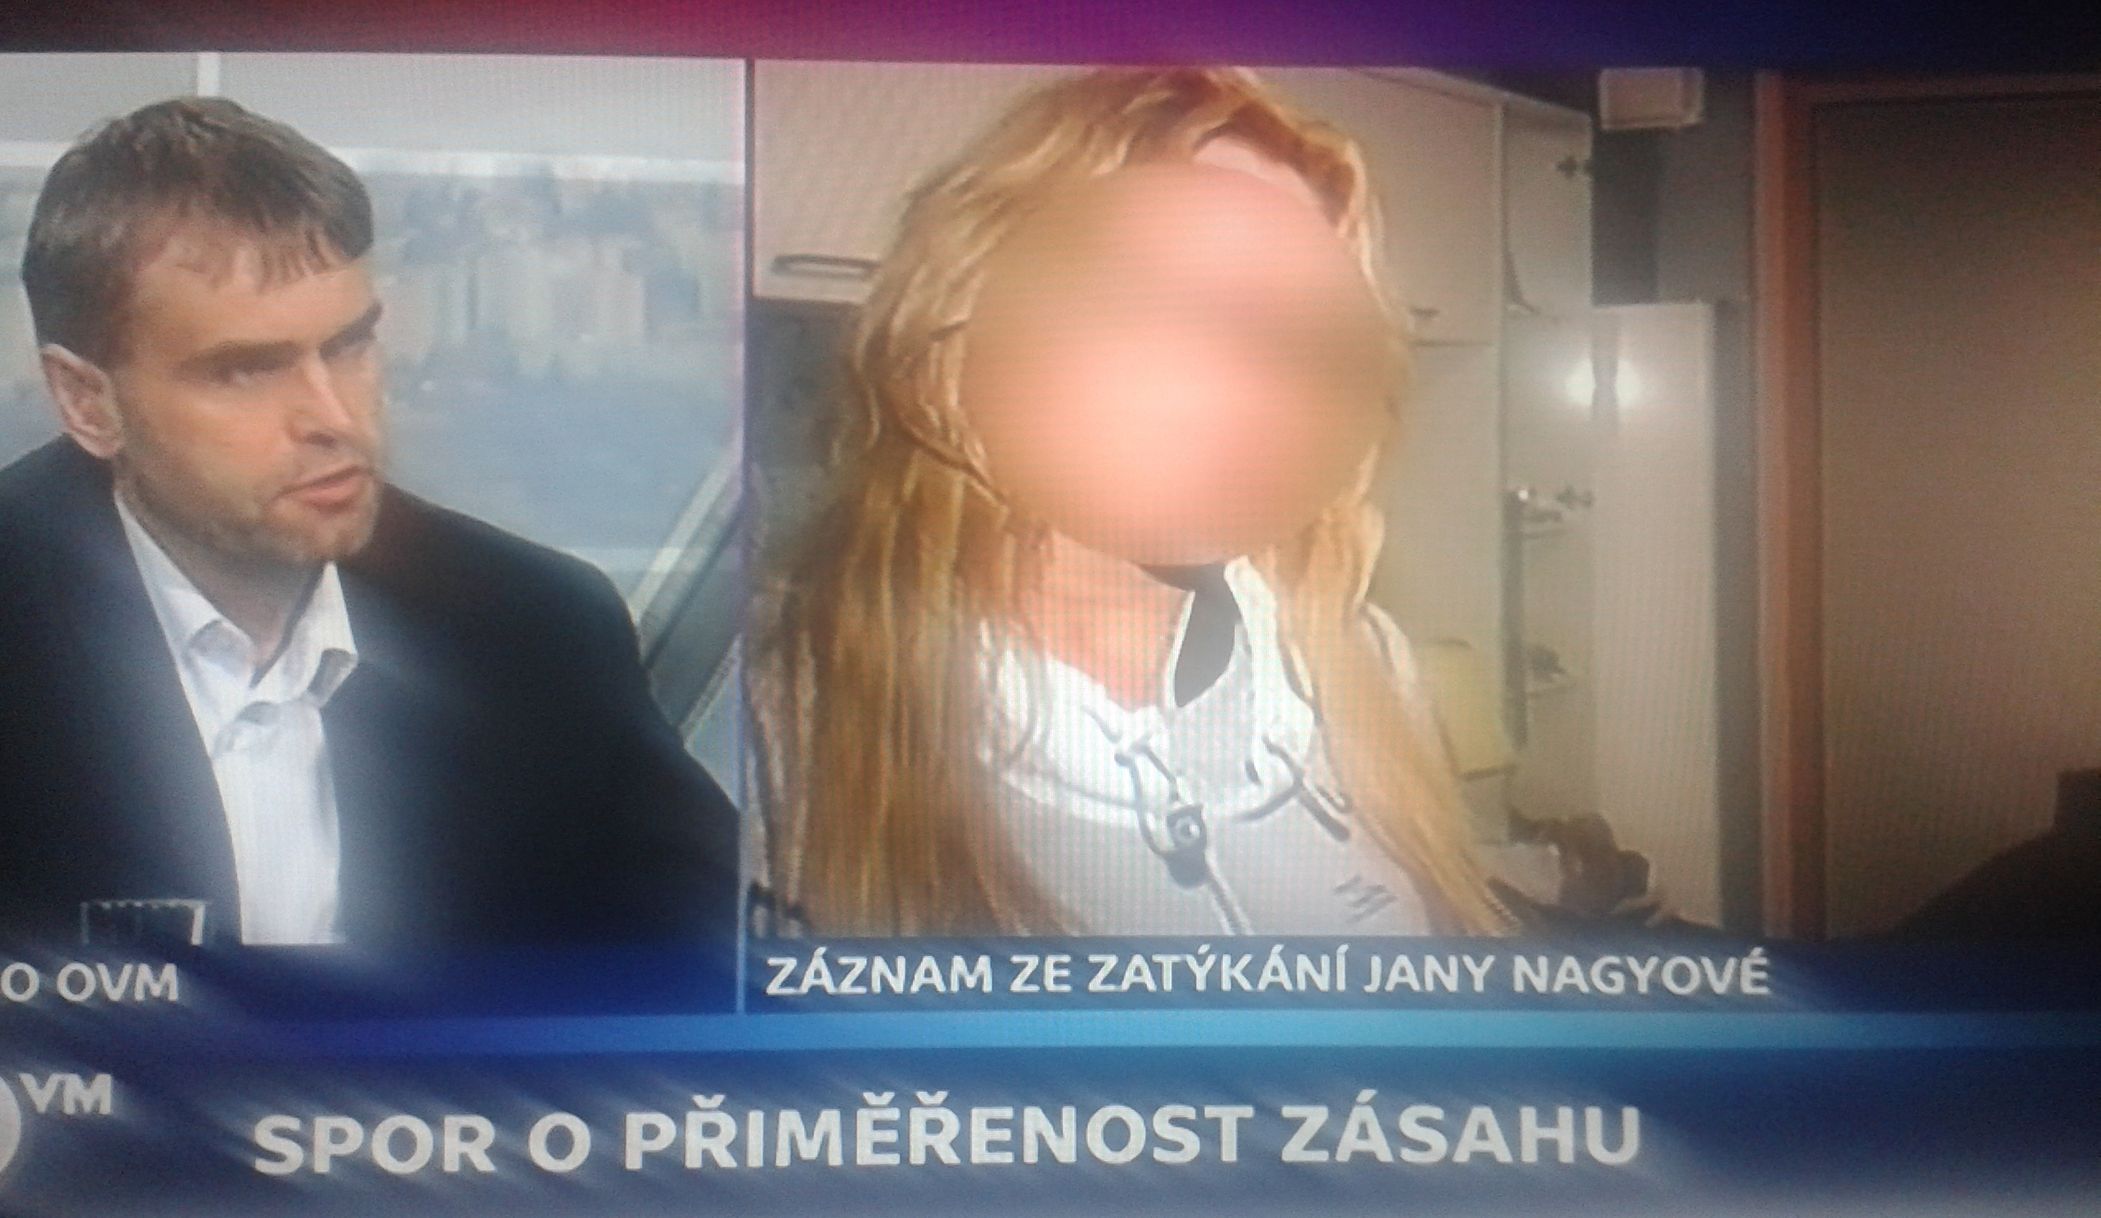 Zatčení Jany Nagyové - záznam v ČT